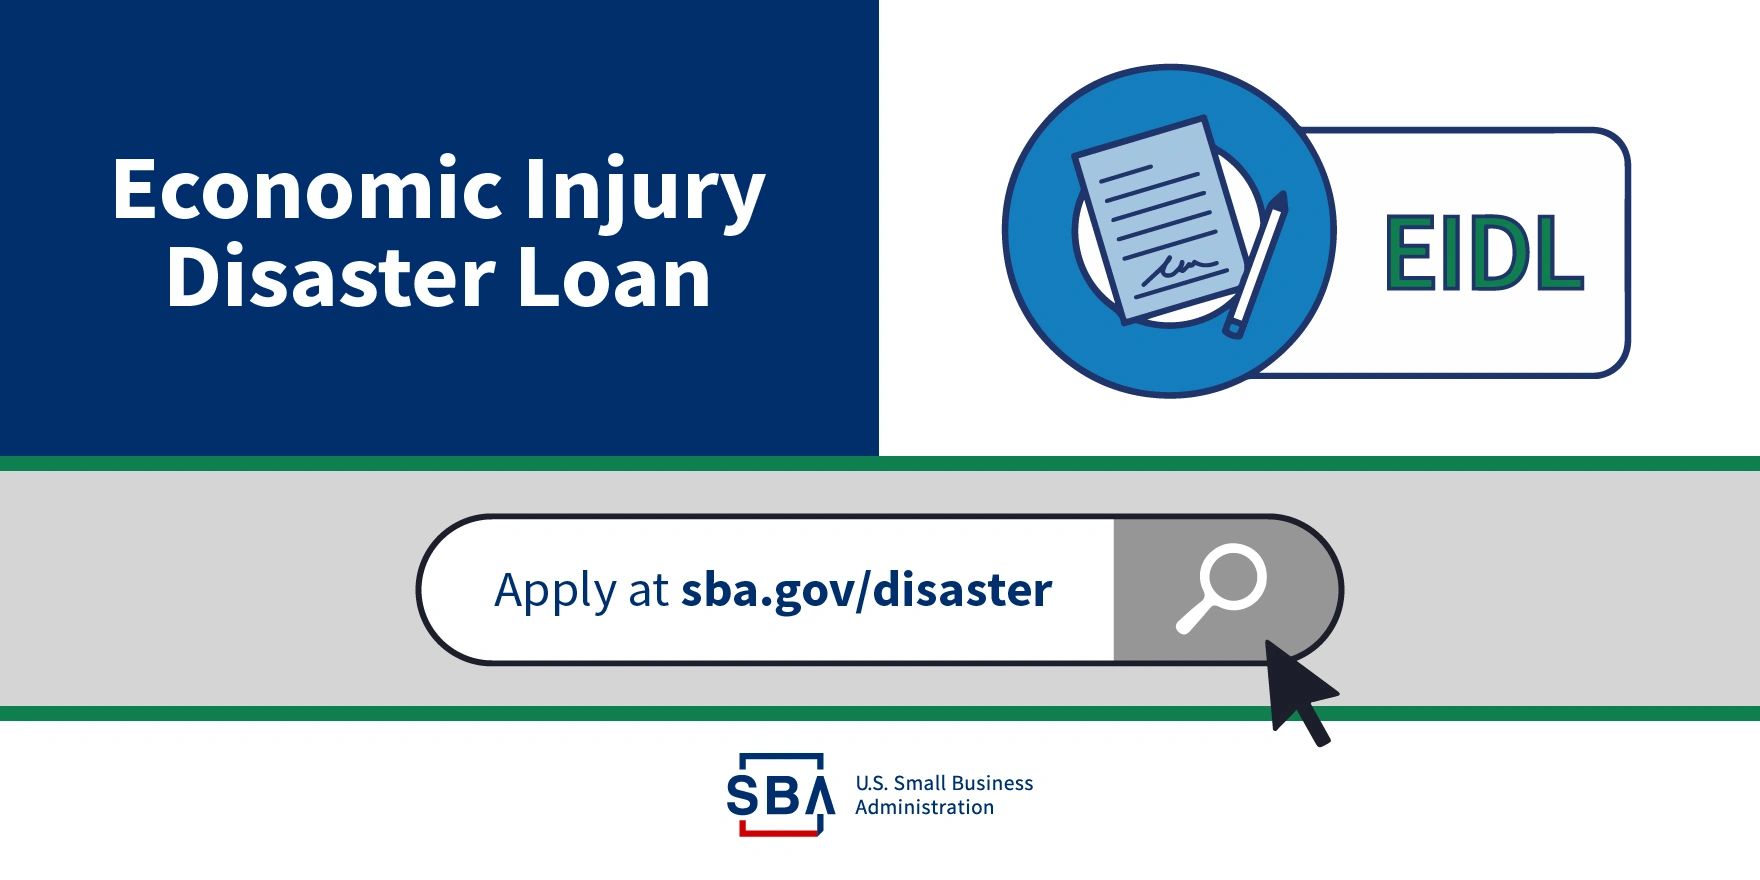 Economic Injury Disaster Loan (EIDL)
Apply at sba.gov/disaster